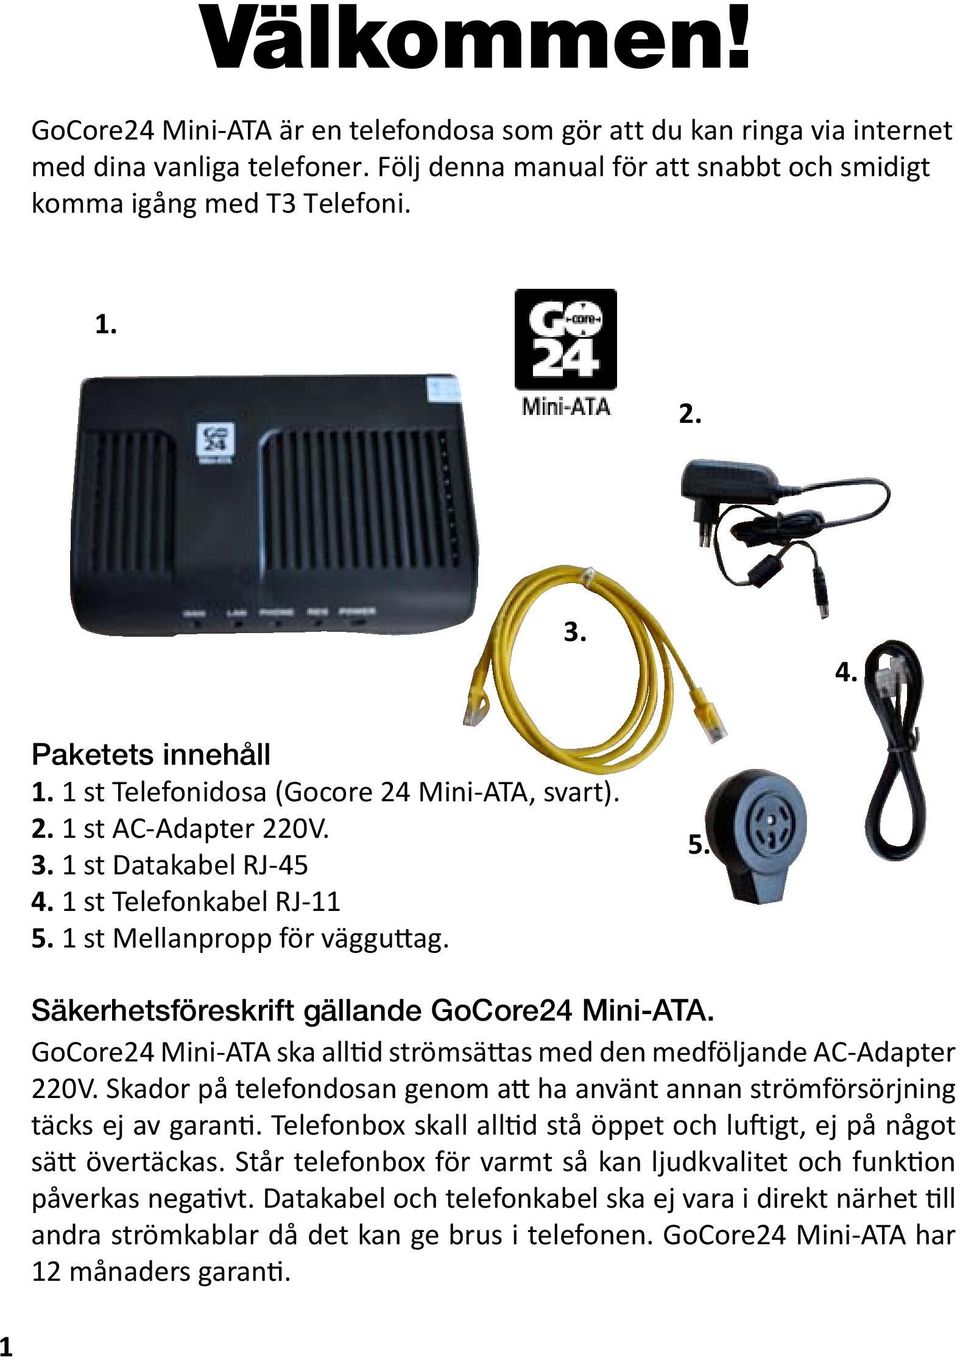 GoCore24 Mini-ATA ska alltid strömsättas med den medföljande AC-Adapter 220V. Skador på telefondosan genom att ha använt annan strömförsörjning täcks ej av garanti.